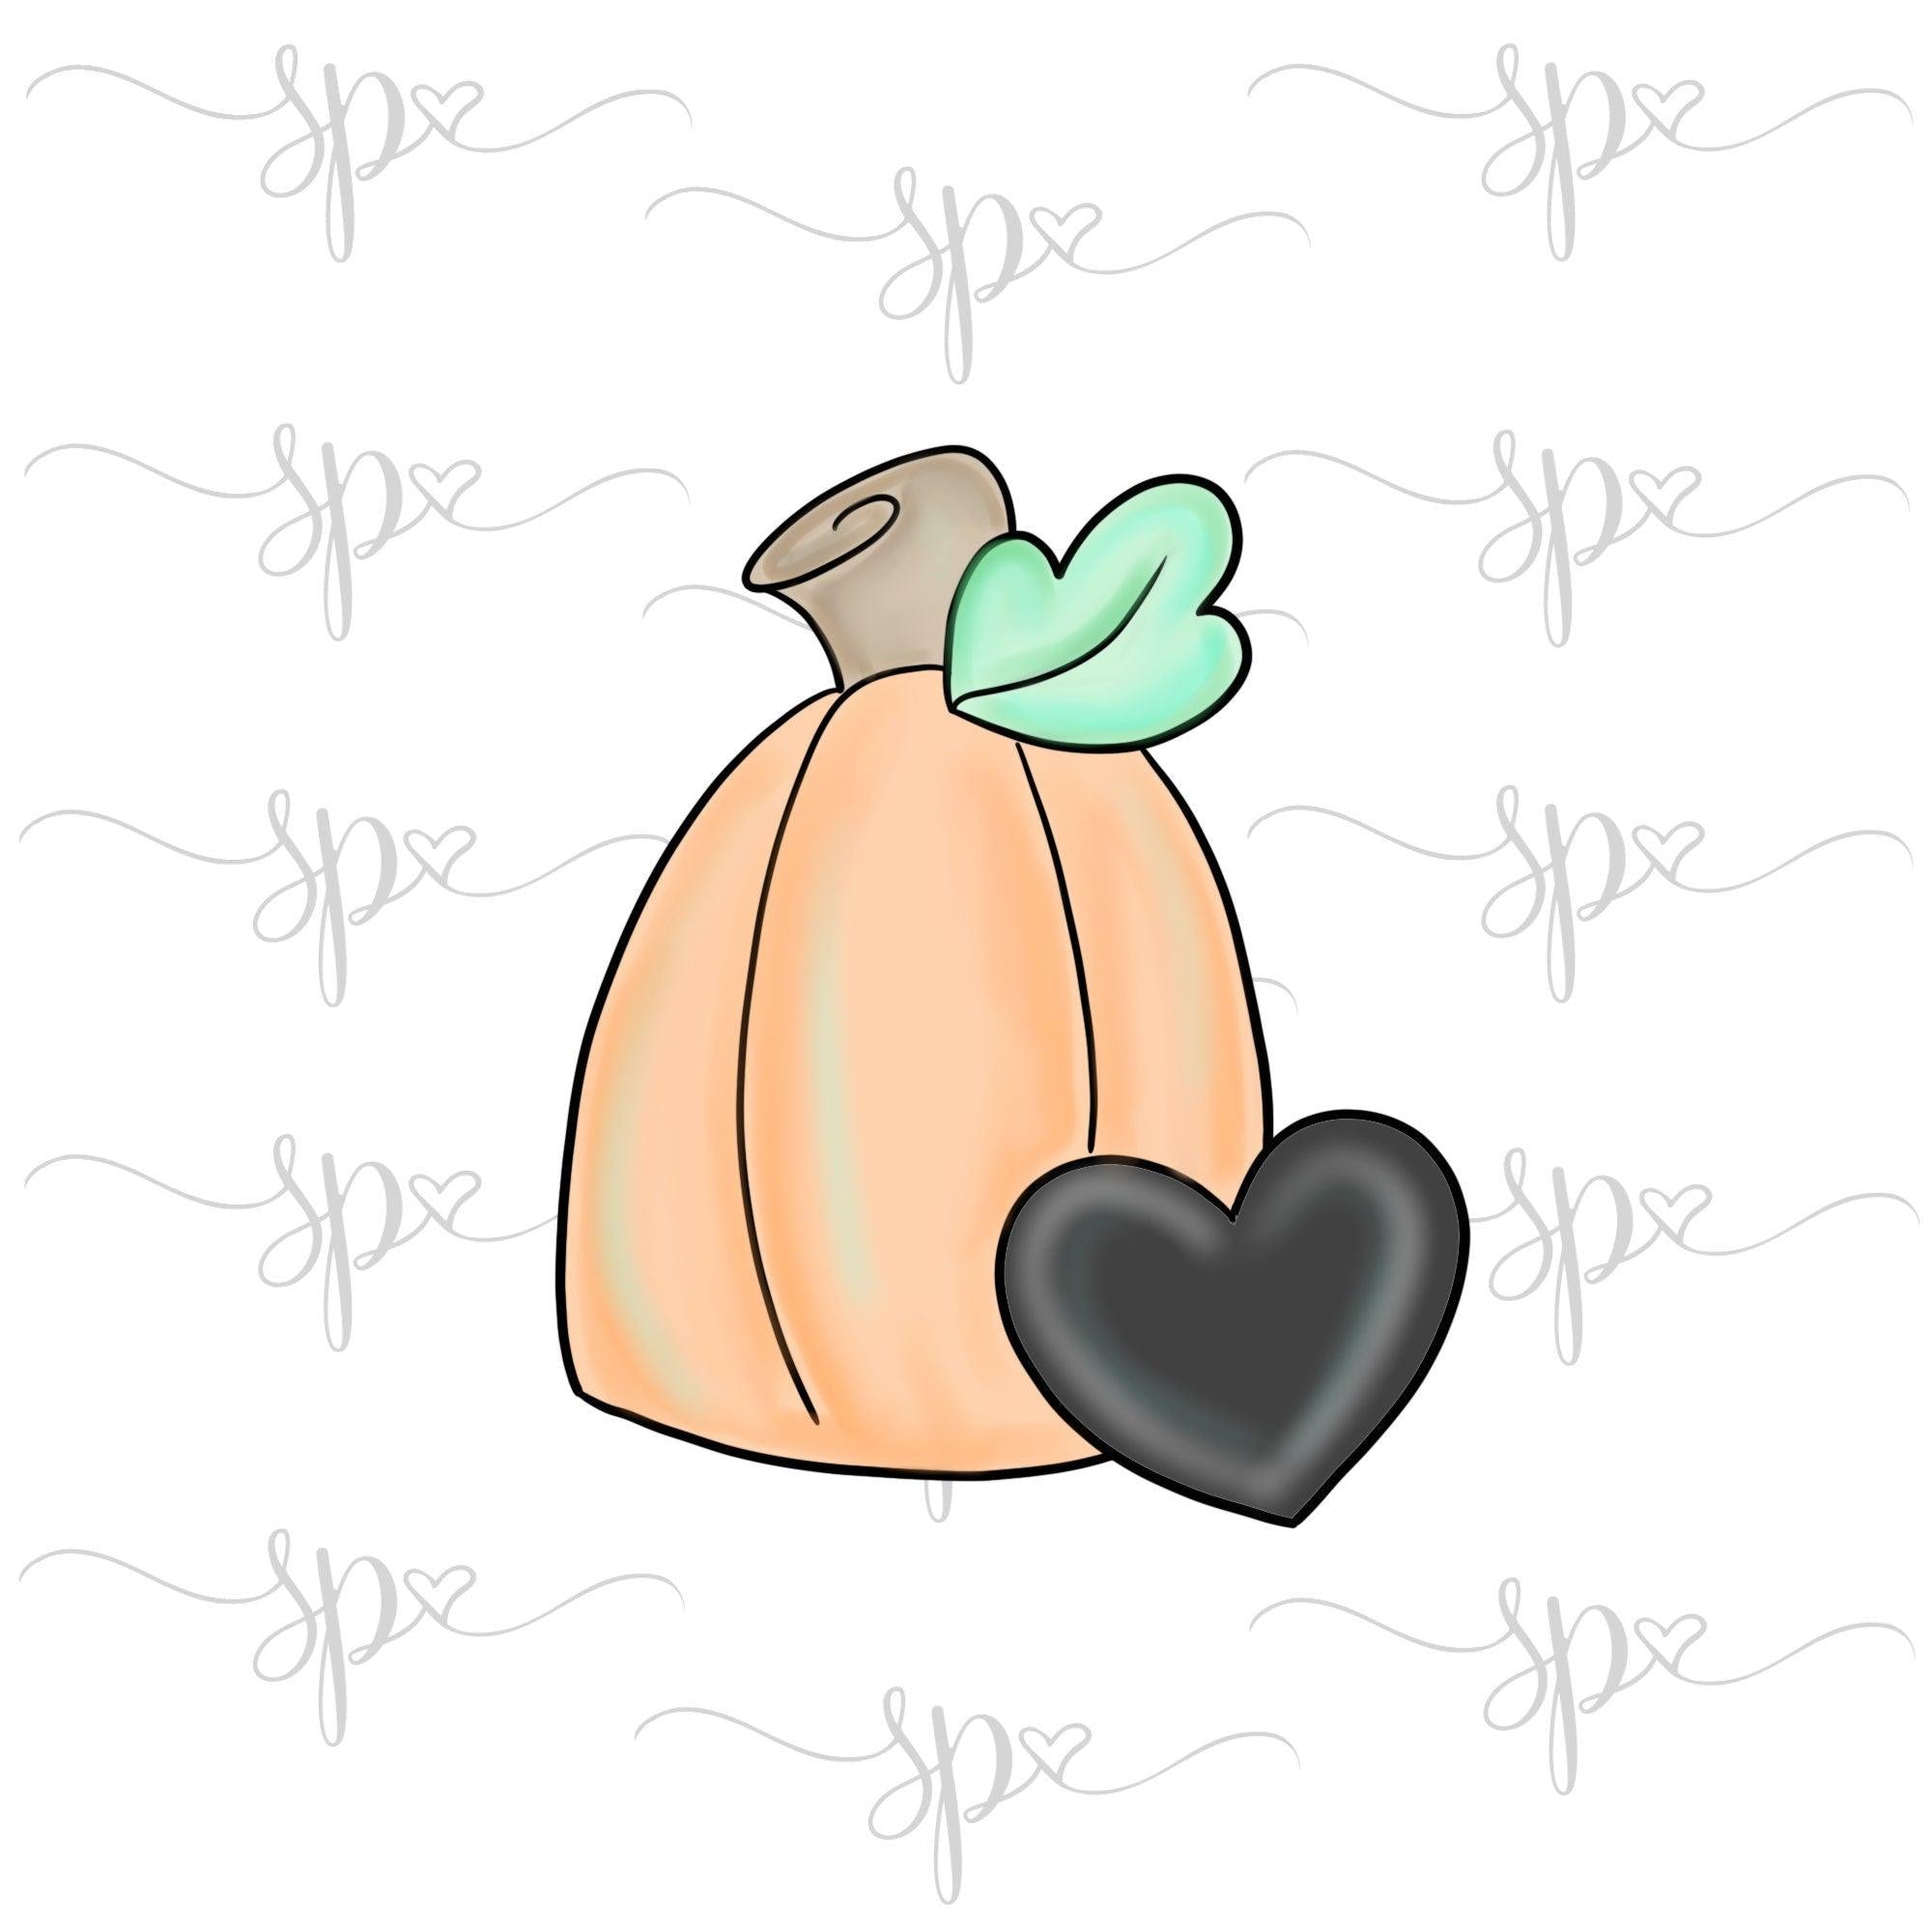 Pumpkin with Heart Cookie Cutter - Sweetleigh 